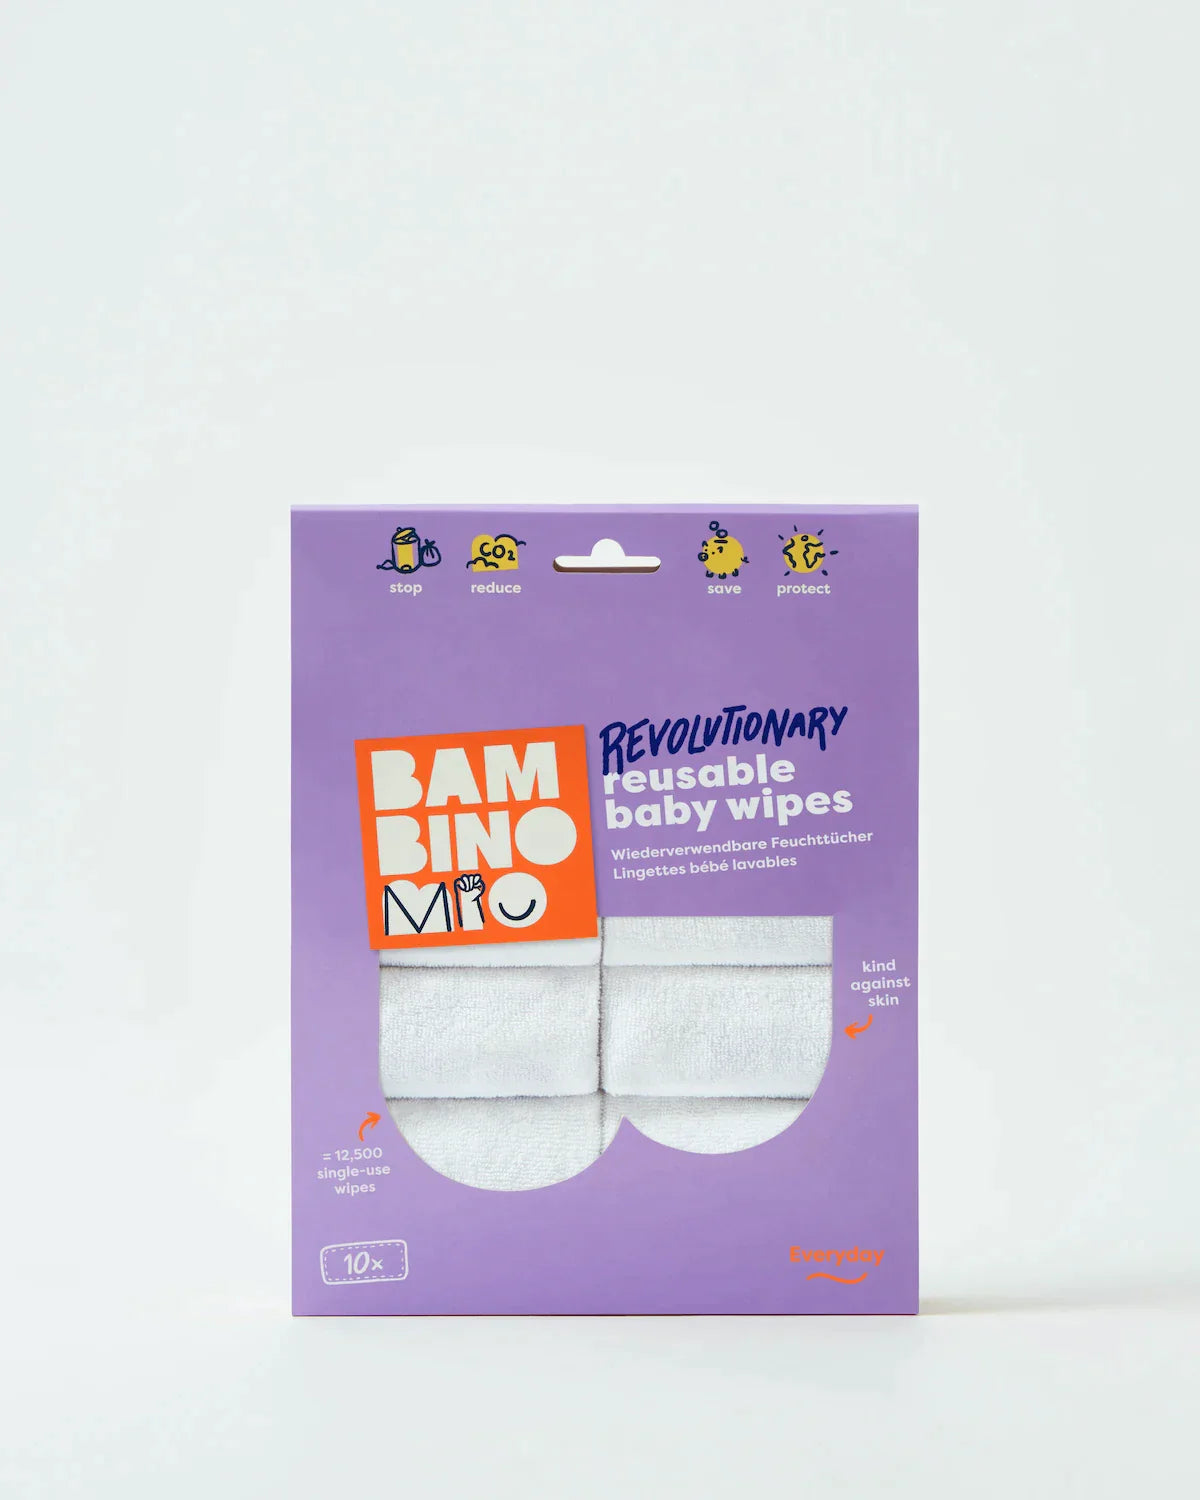 Reusable baby wipes - Everyday - Bambino Mio (EU)